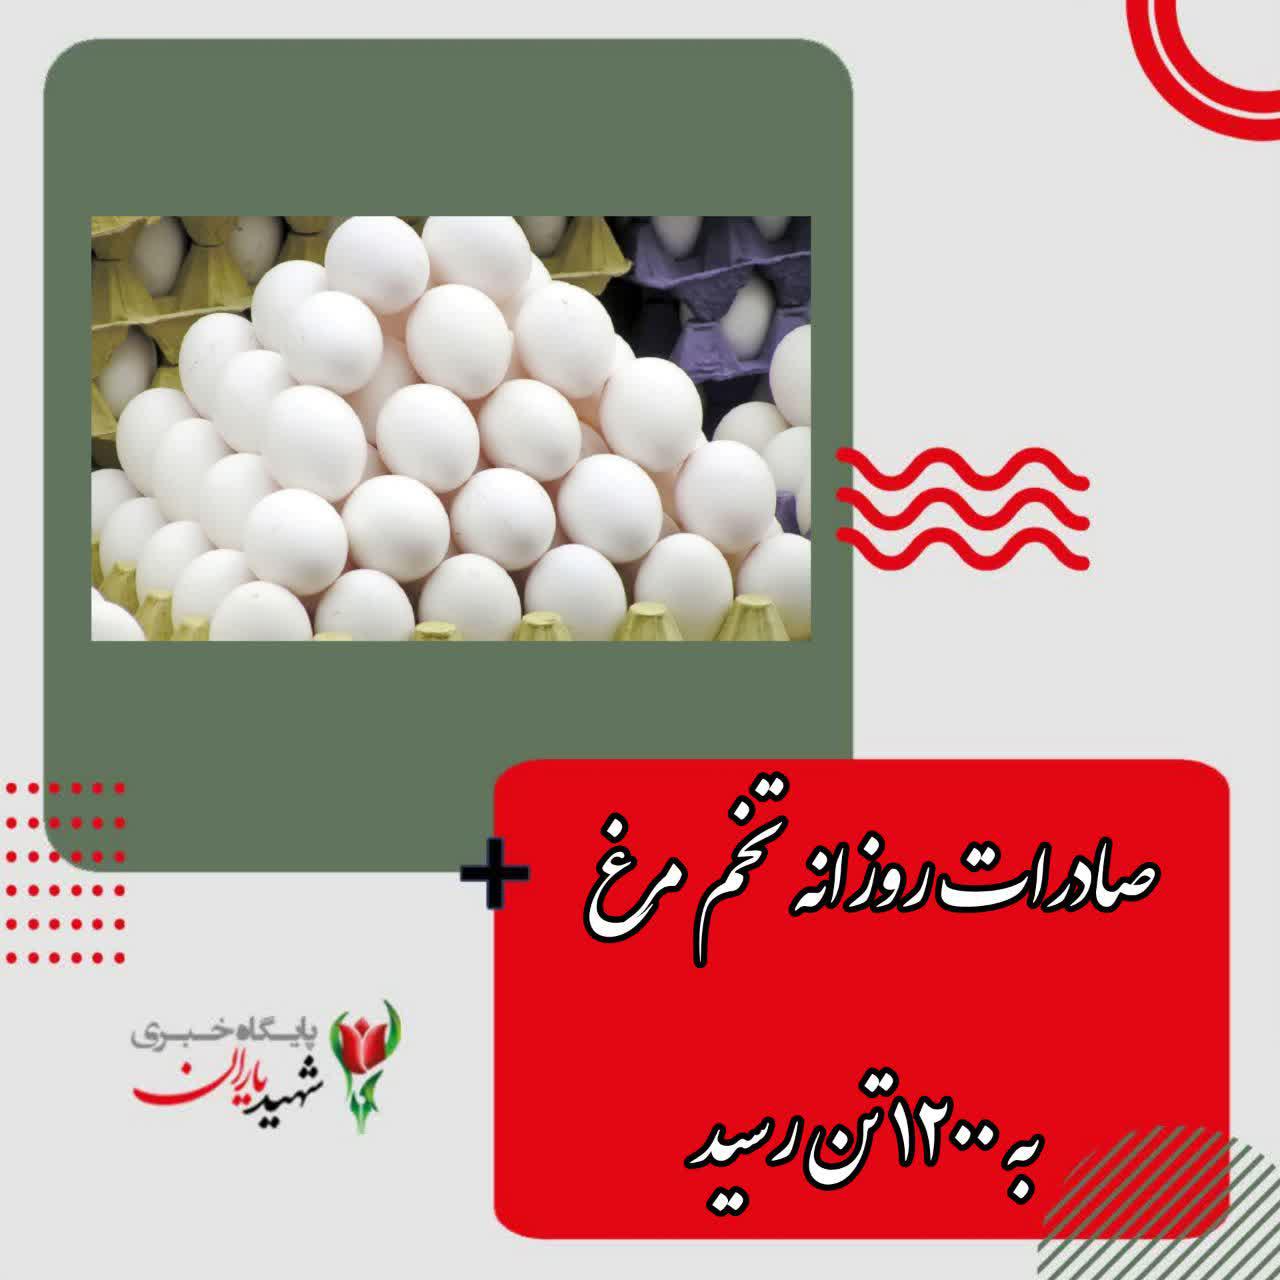 صادرات روزانه تخم مرغ به ۱۲۰۰ تن رسید